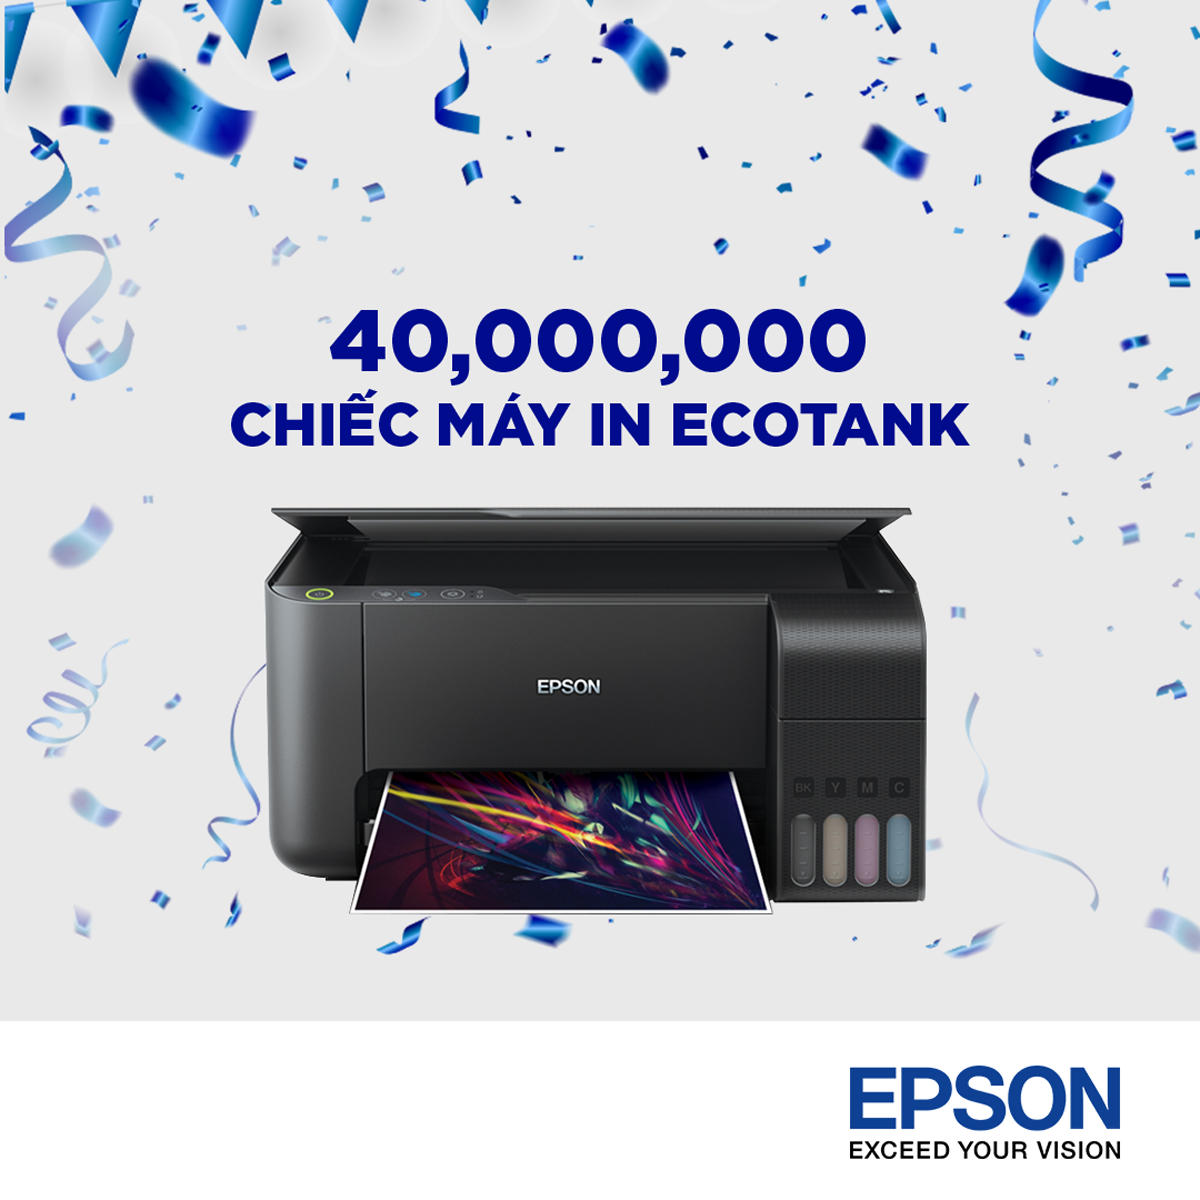 Epson tuyên bố bán được 40 triệu chiếc máy in phun trên toàn cầu, dự kiến bán tiếp hơn 10 triệu chiếc chỉ trong năm 2019